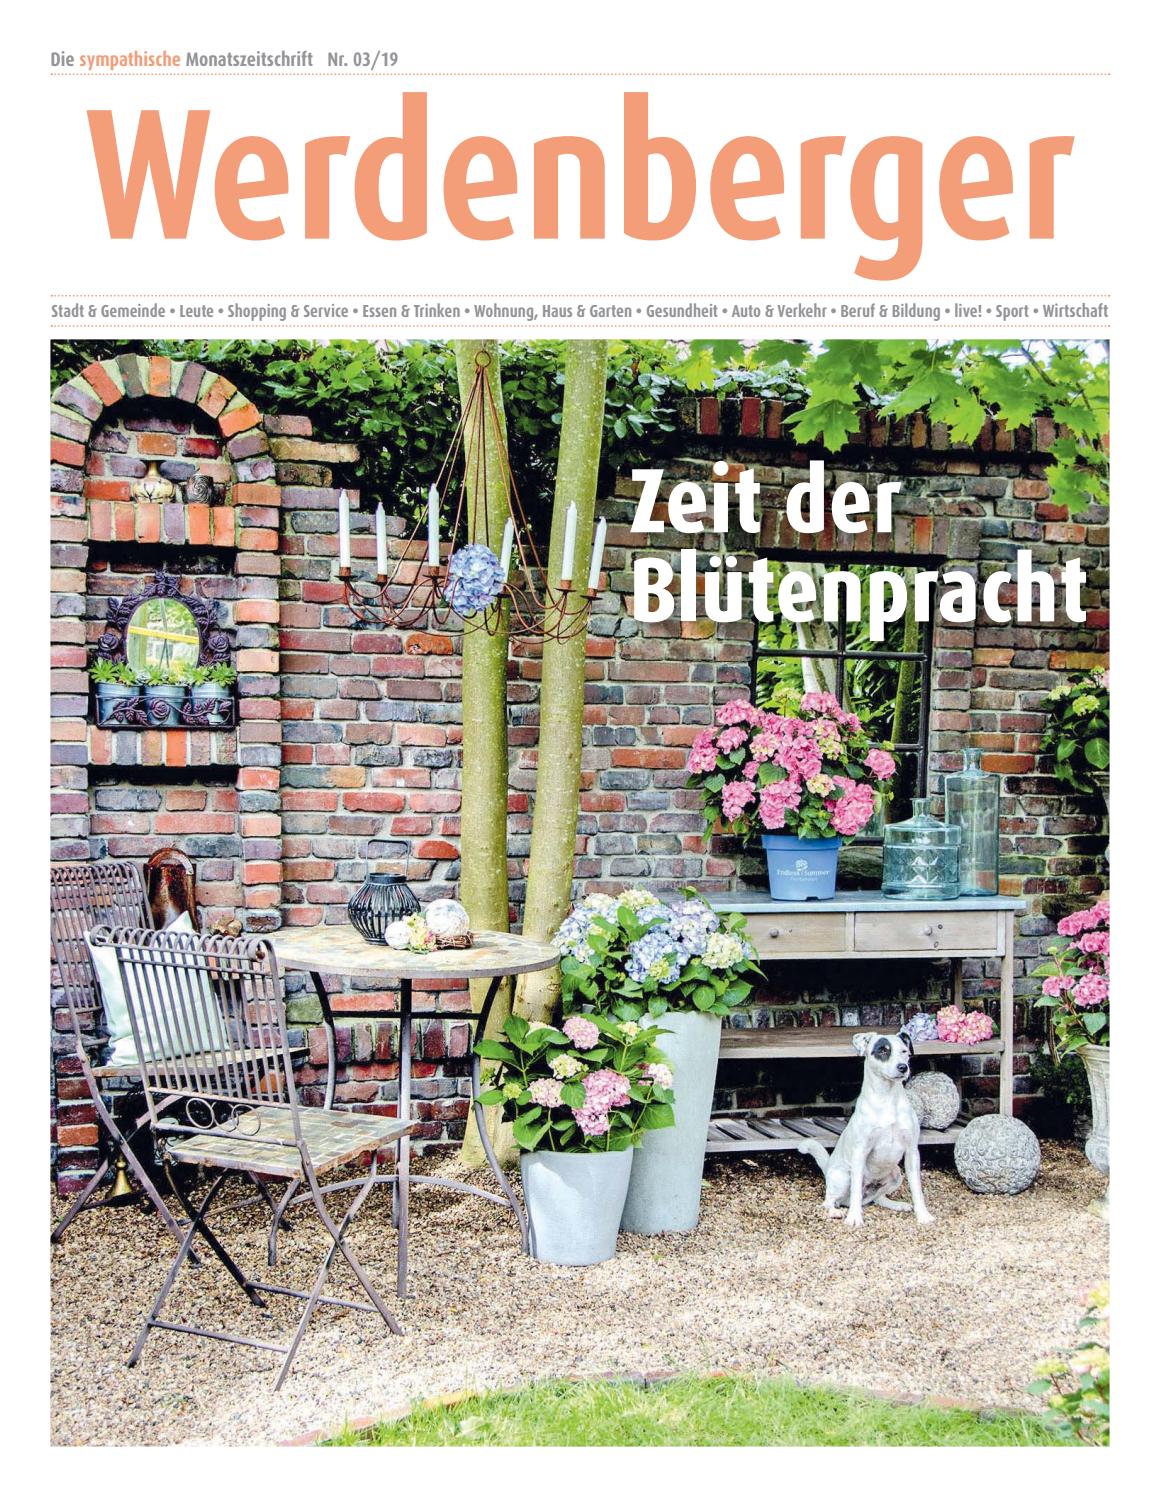 Gartenanlagen Beispiele Luxus Werdenberger Nr 3 19 April 2019 by Lie Monat issuu